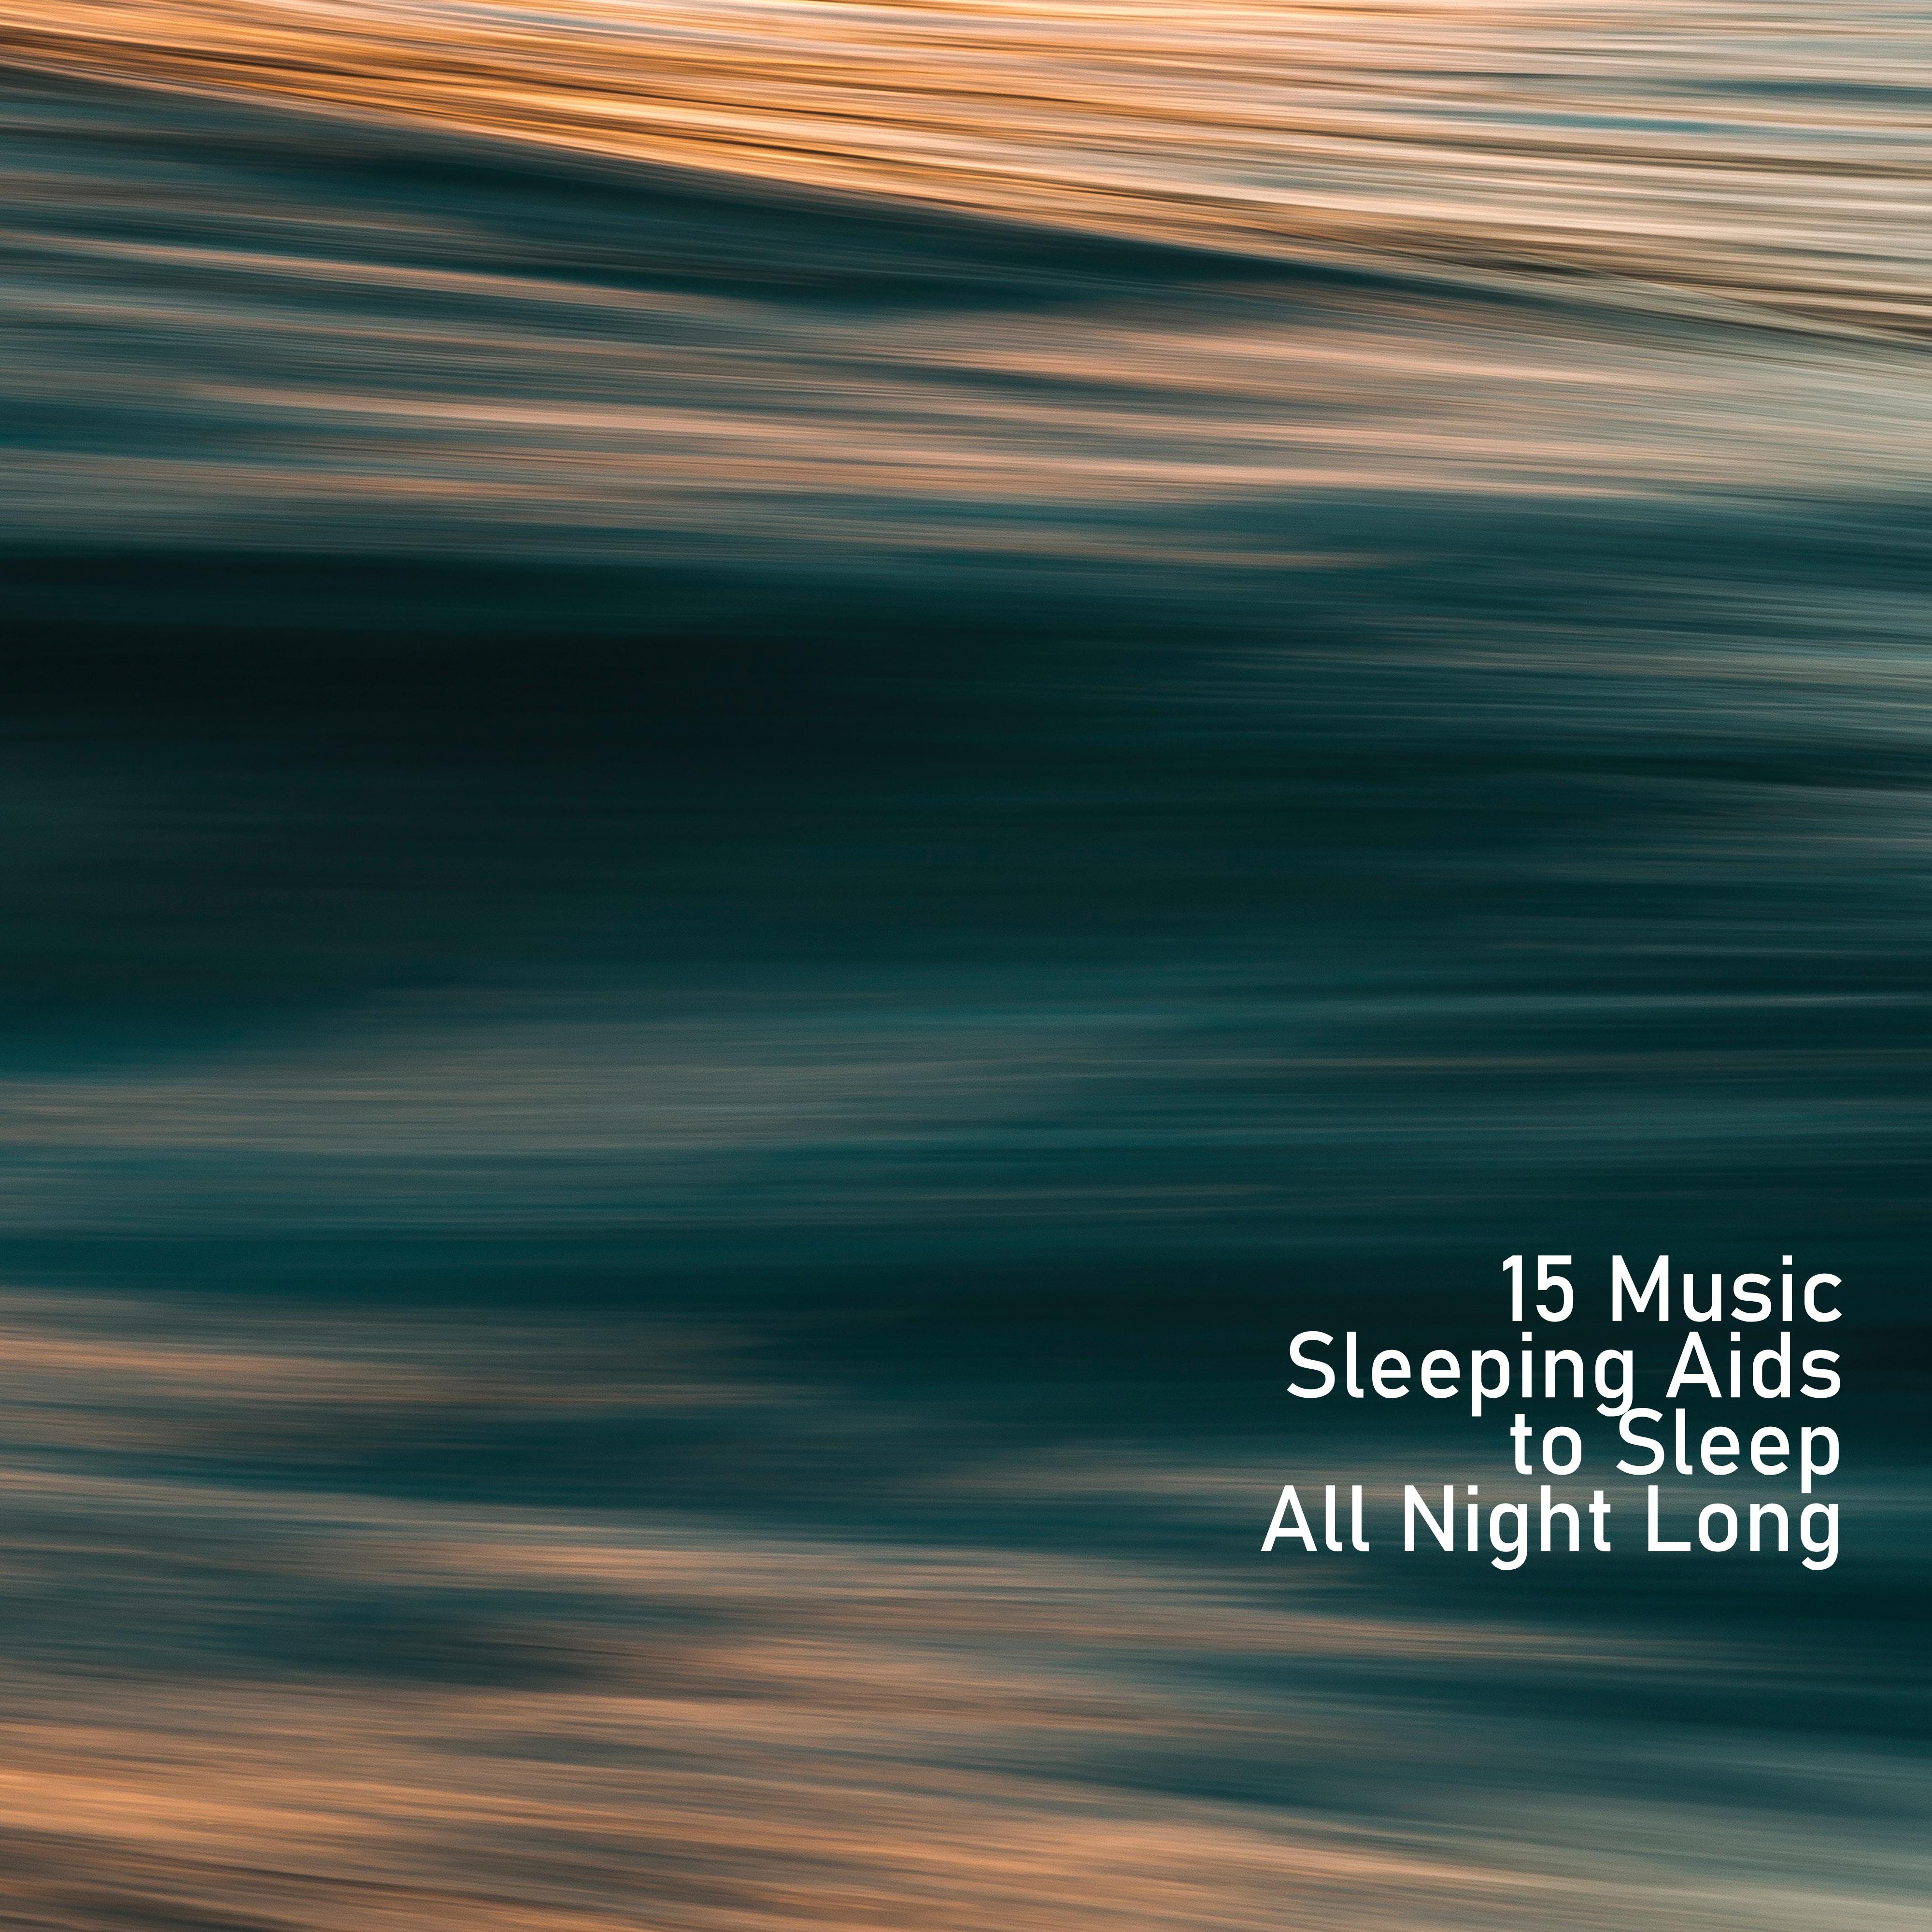 15 Music Sleeping Aids to Sleep All Night Long